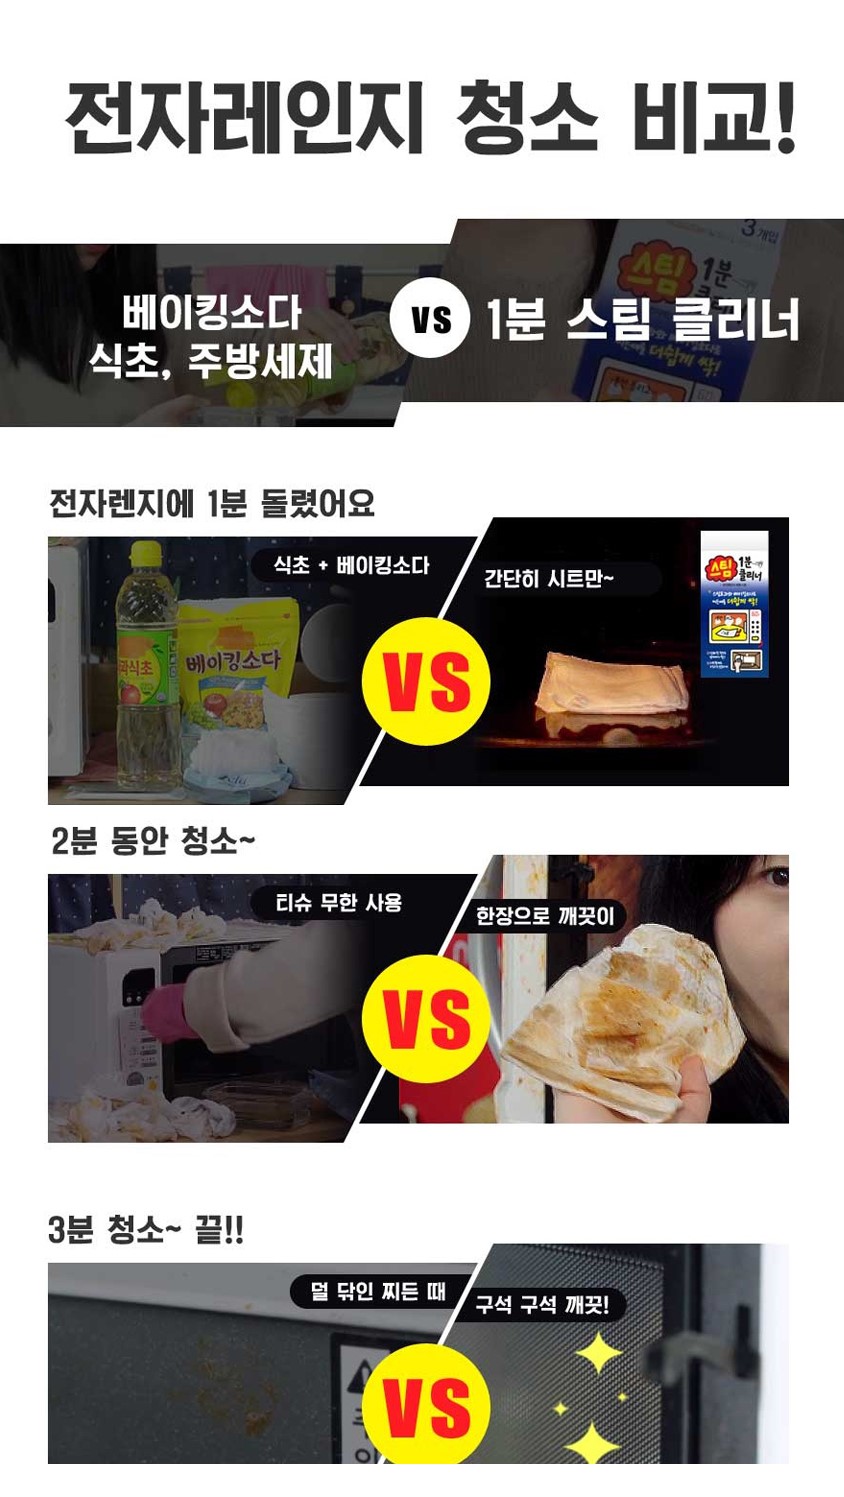 韓國食品-[Aekyung] 1 minute Microwave Cleaner (3ea)